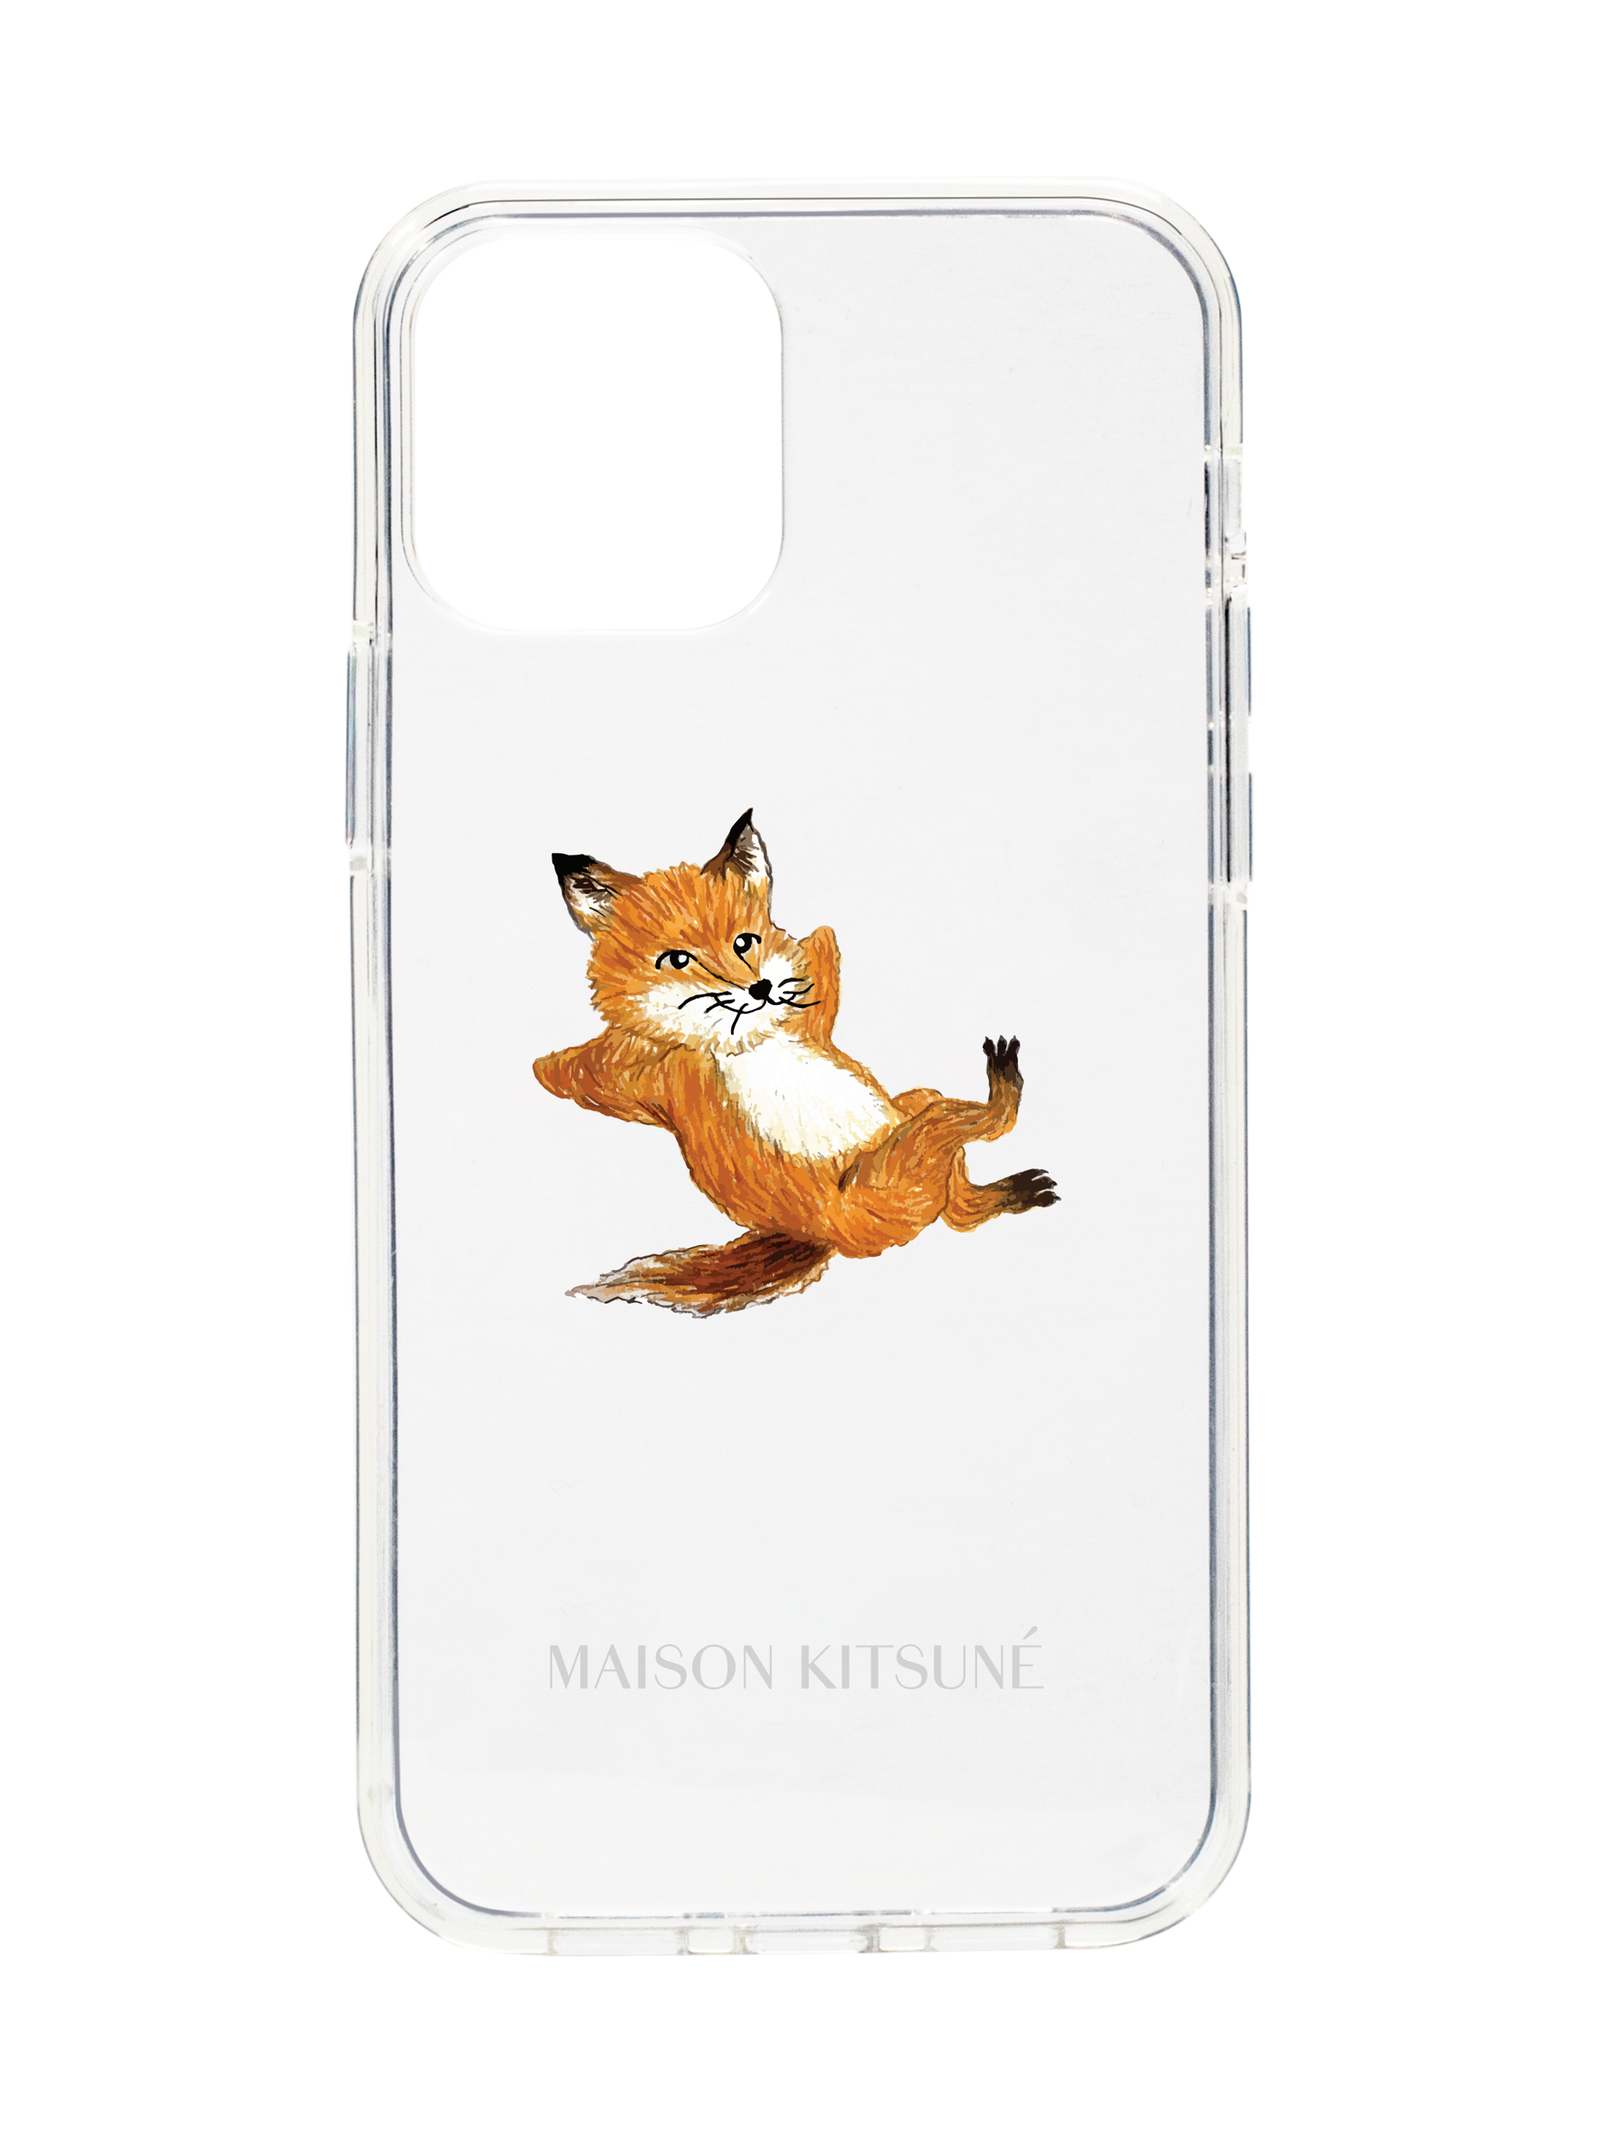 スマホアクセサリー iPhone用ケース MAISON KITSUNÉ - 【IPHONE 12/12PRO】対応ケース - CHILLAX FOX CASE 